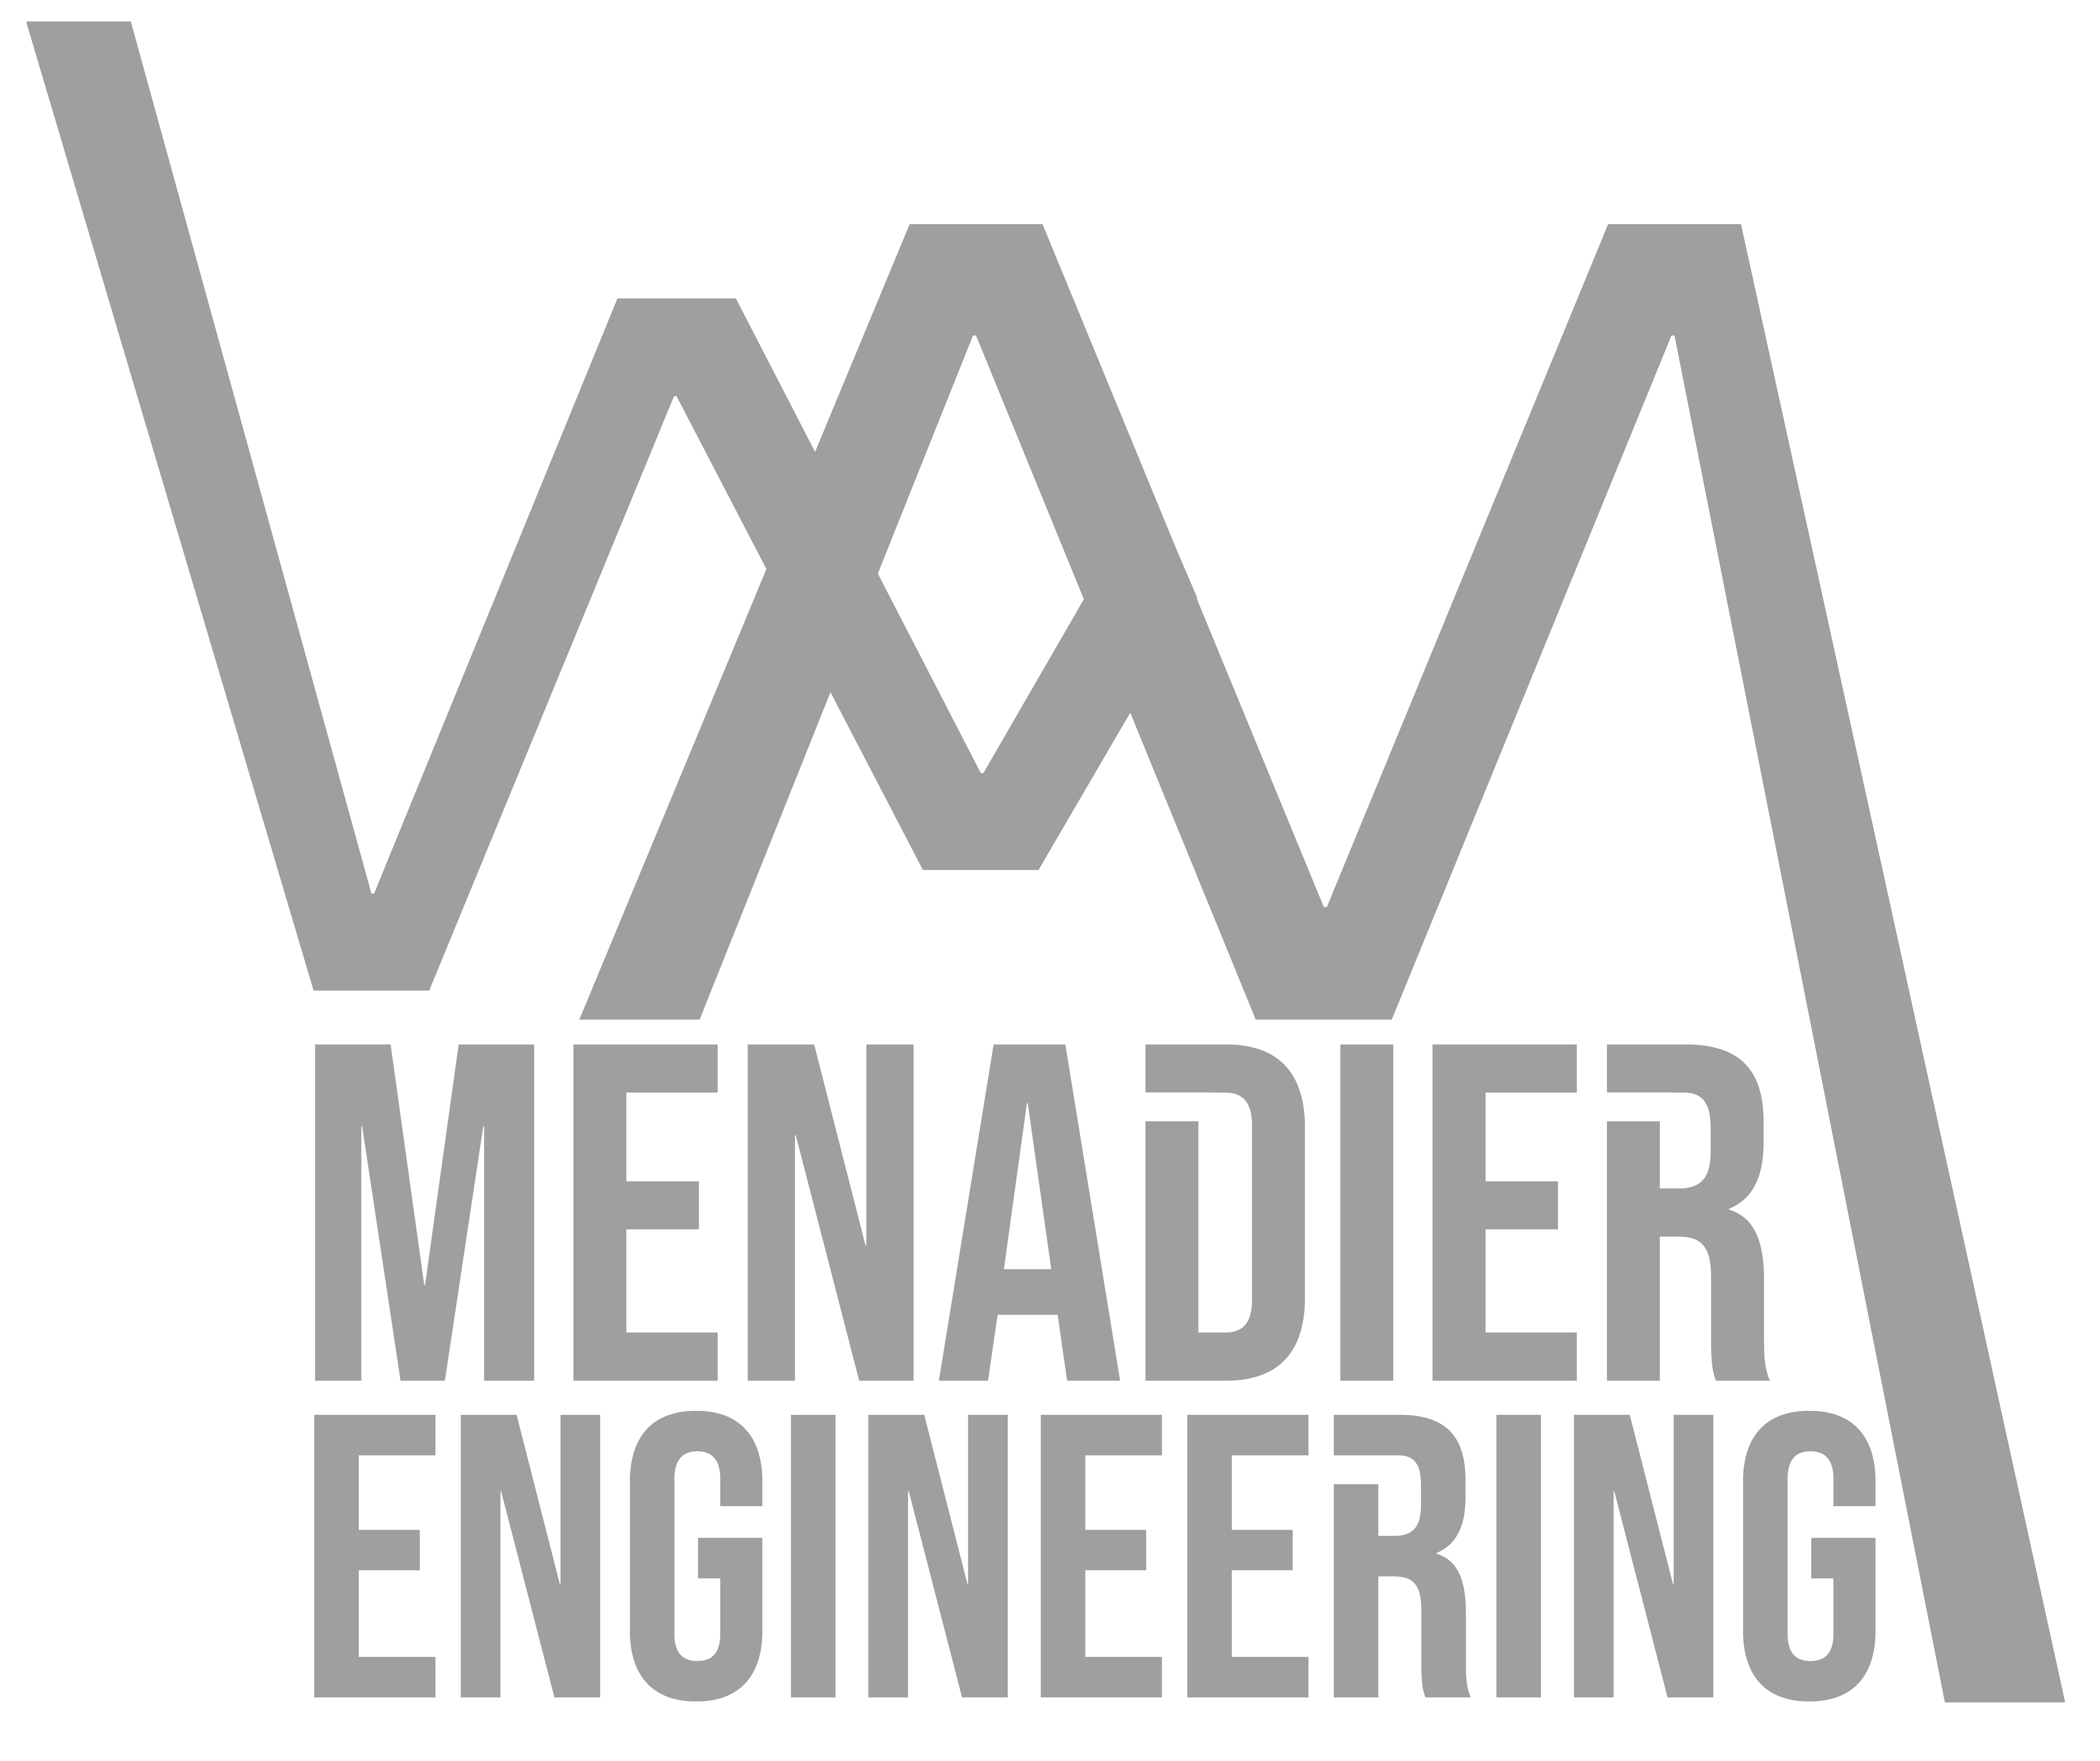 Menadier Engineering, LLC.